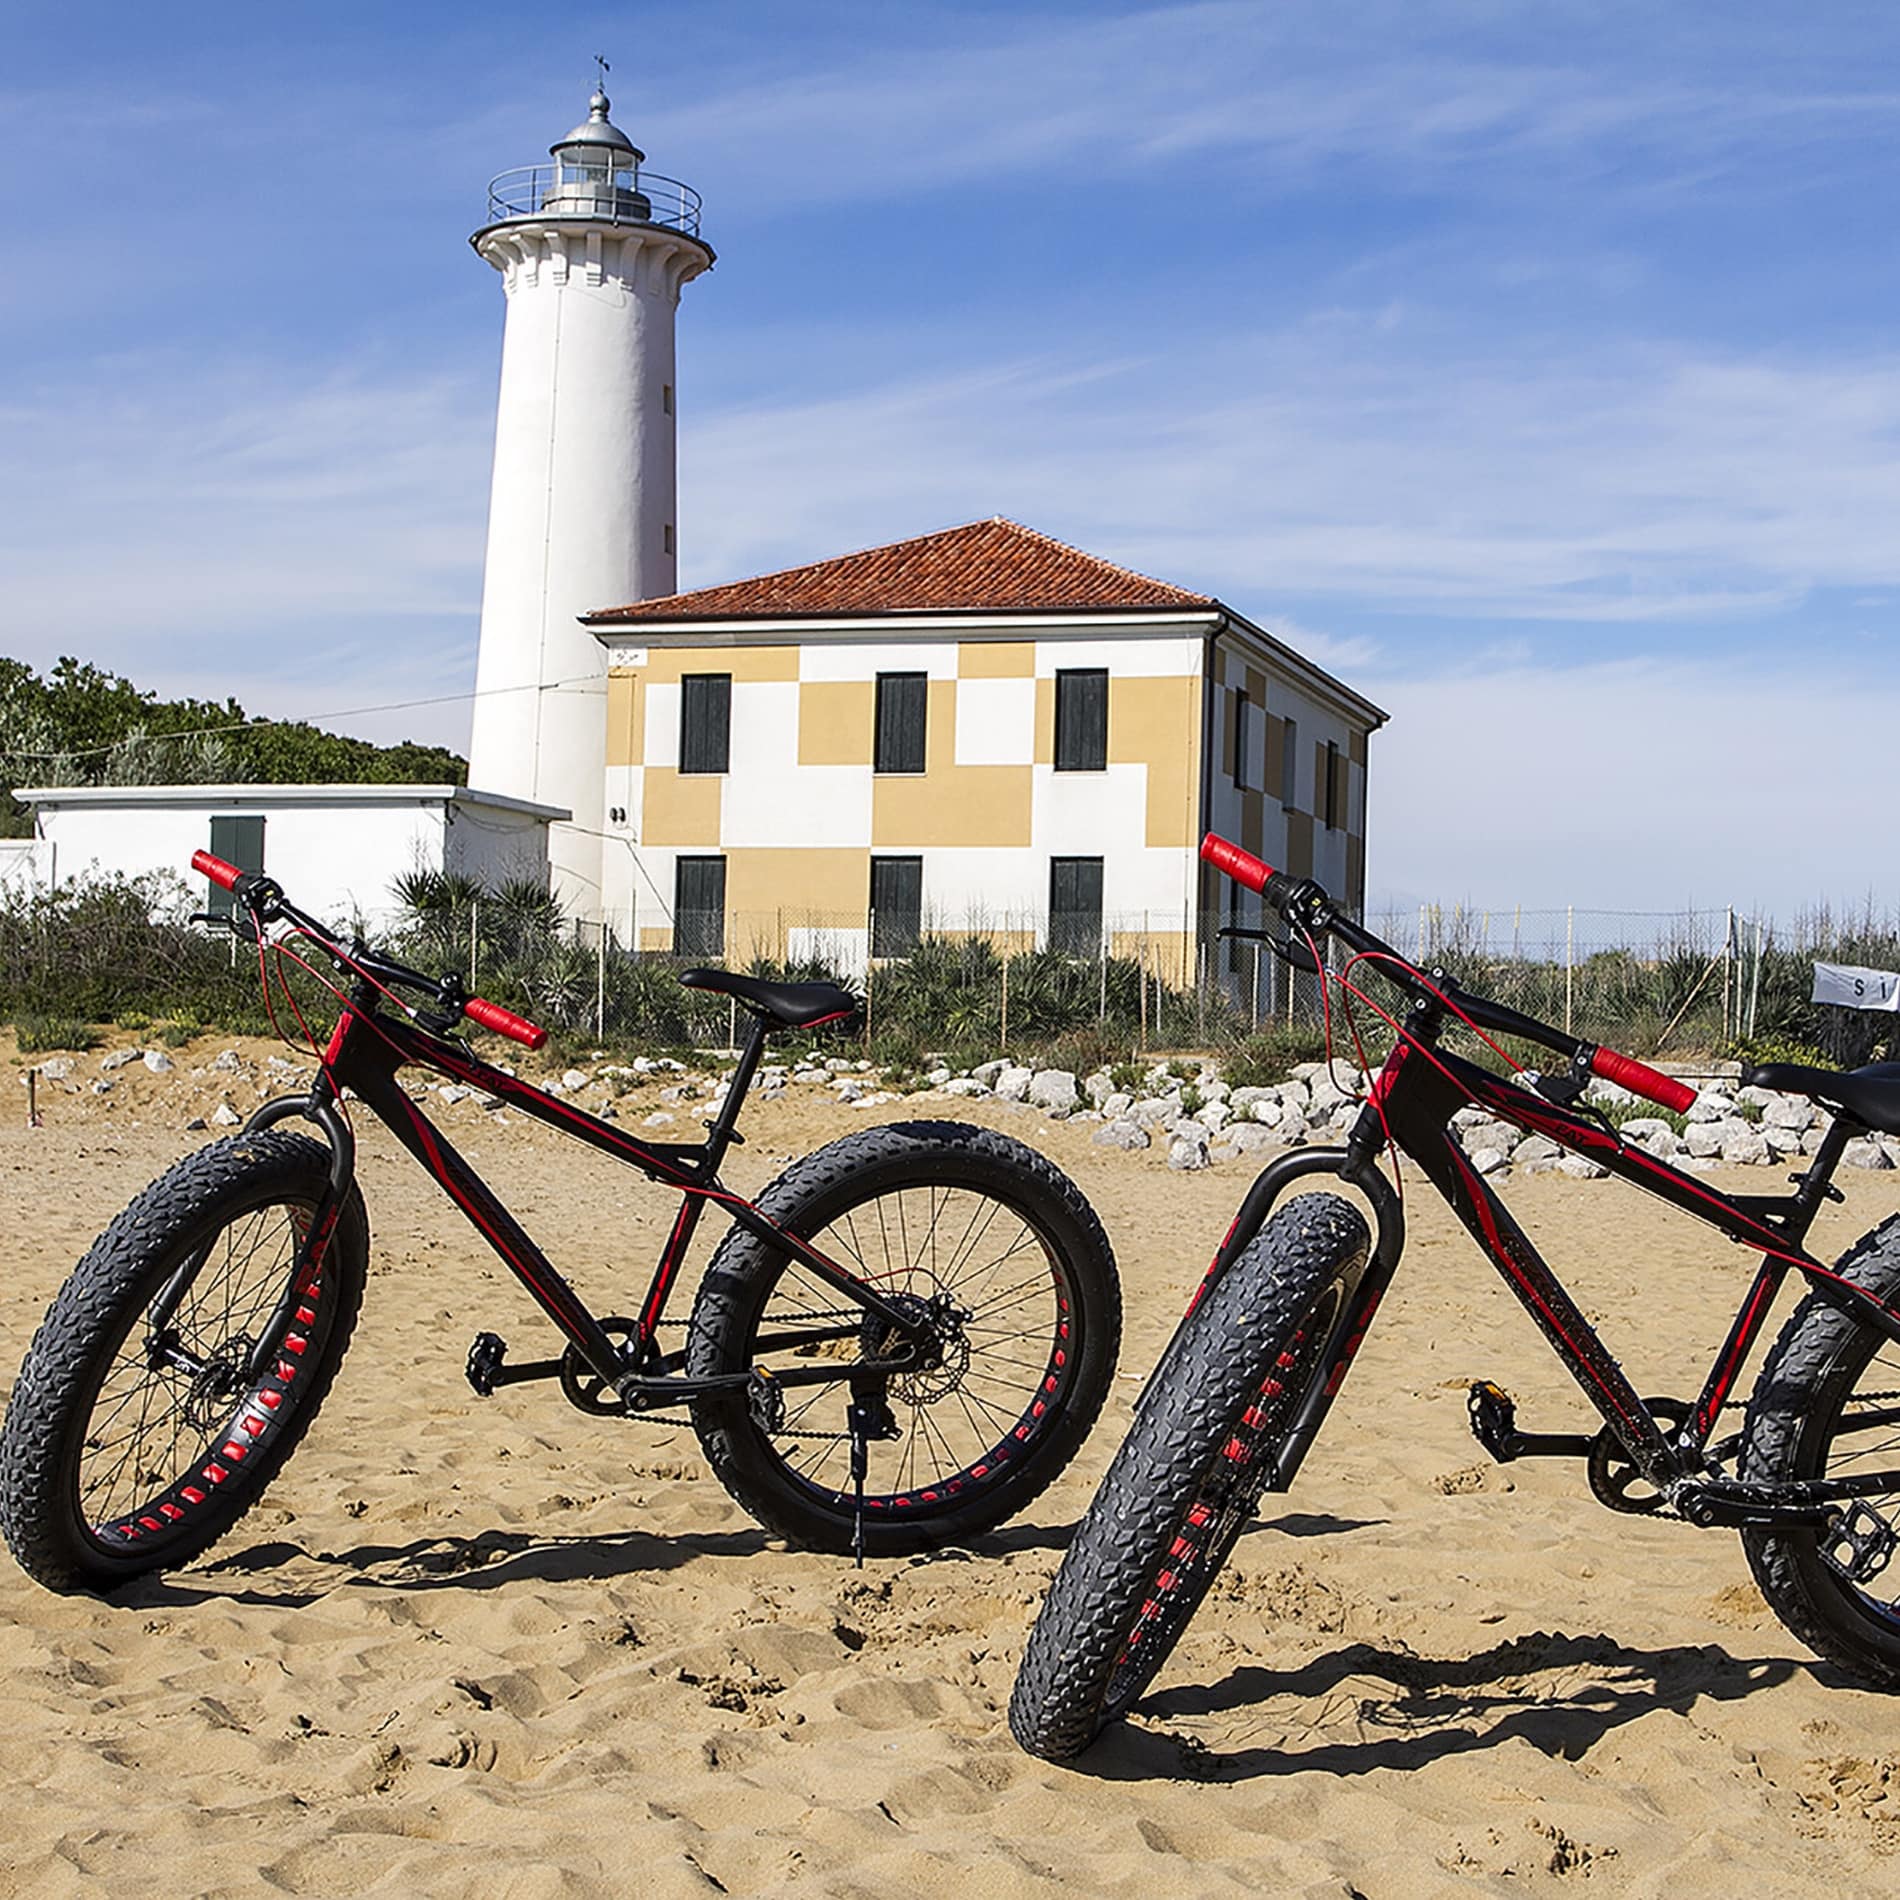 Ferienhaus in Bibione Thermae mit Fahrrädern mit dicken Reifen zum Fahren im Sand